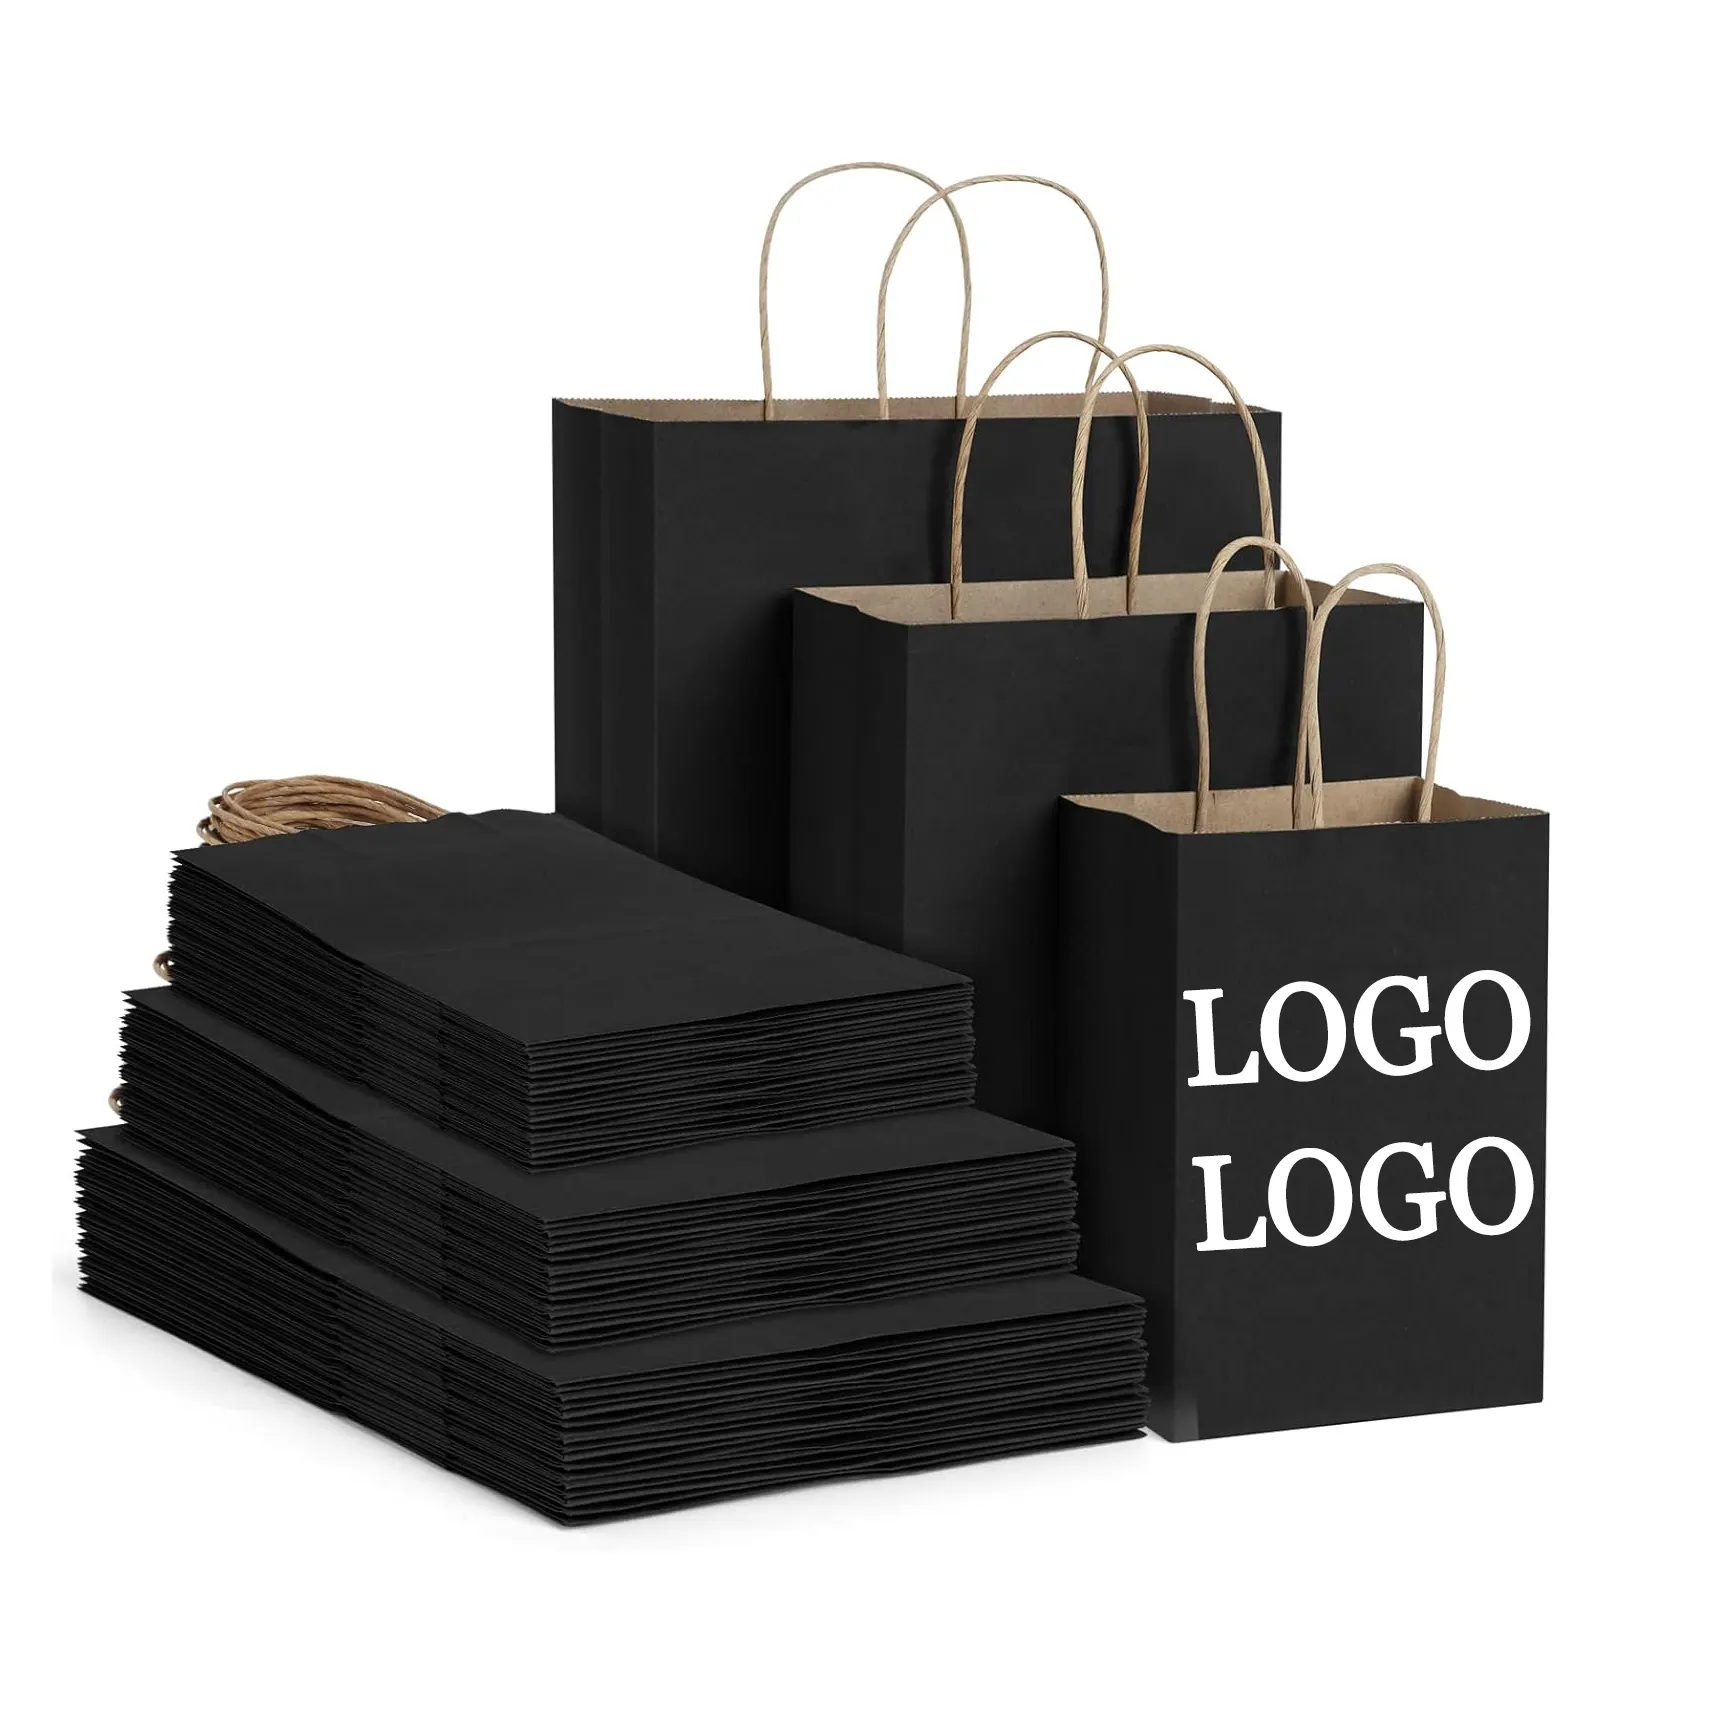 Consegna rapida stampa personalizzata scarpe di abbigliamento per snack artigianato regalo personalizzato 120g riciclato 26*12*31.5 sacchetto di carta nera